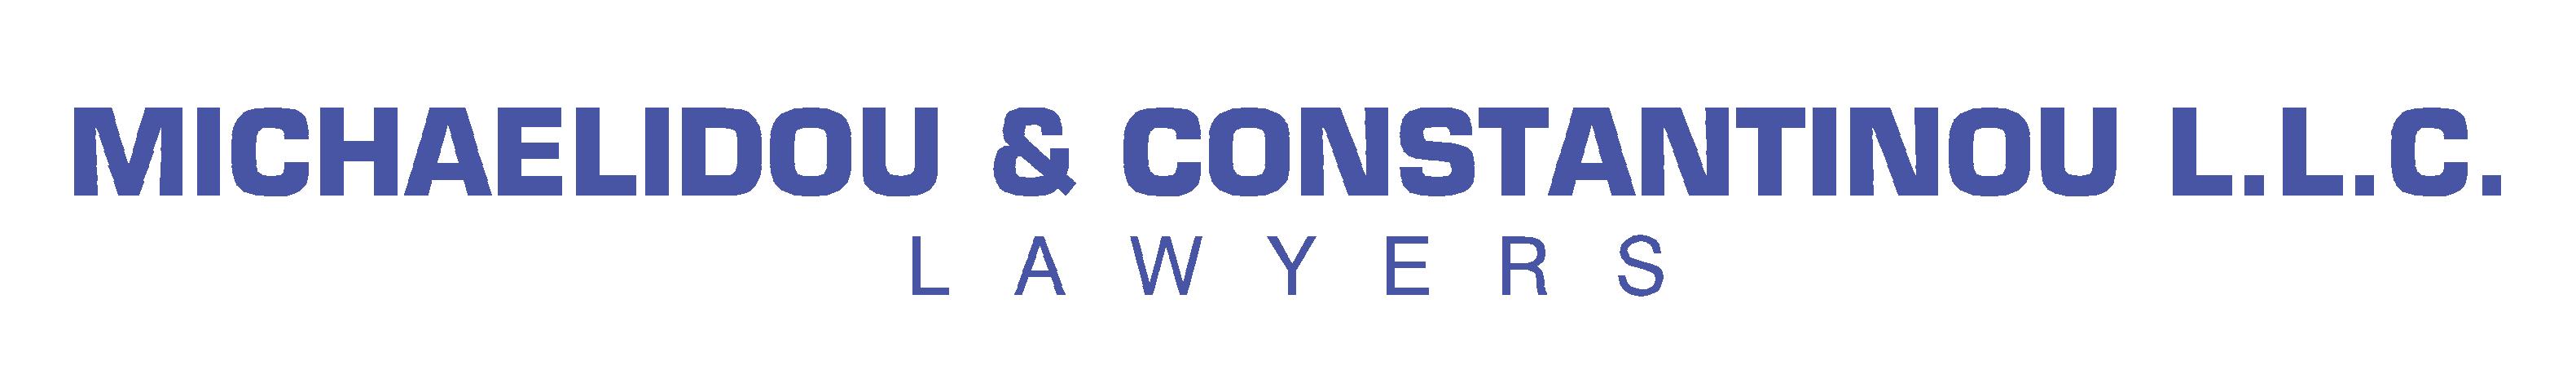 MICHAELIDOU & CONSTANTINOU LAWYERS-LEGAL CONSULTANTS